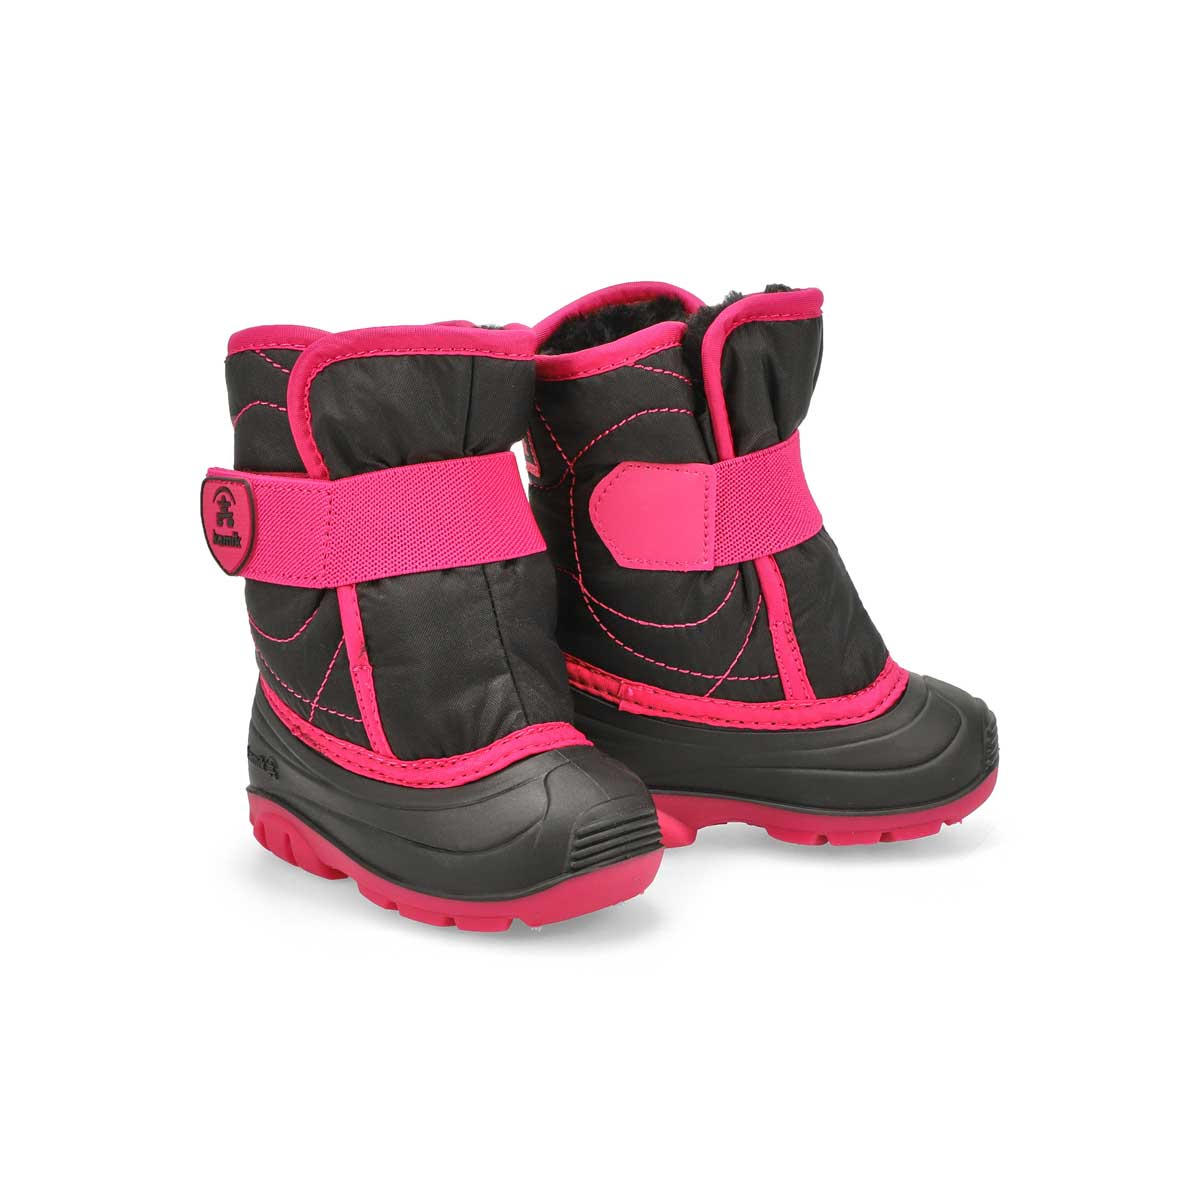 Infants' Snowbug 3 Waterproof Winter Boot